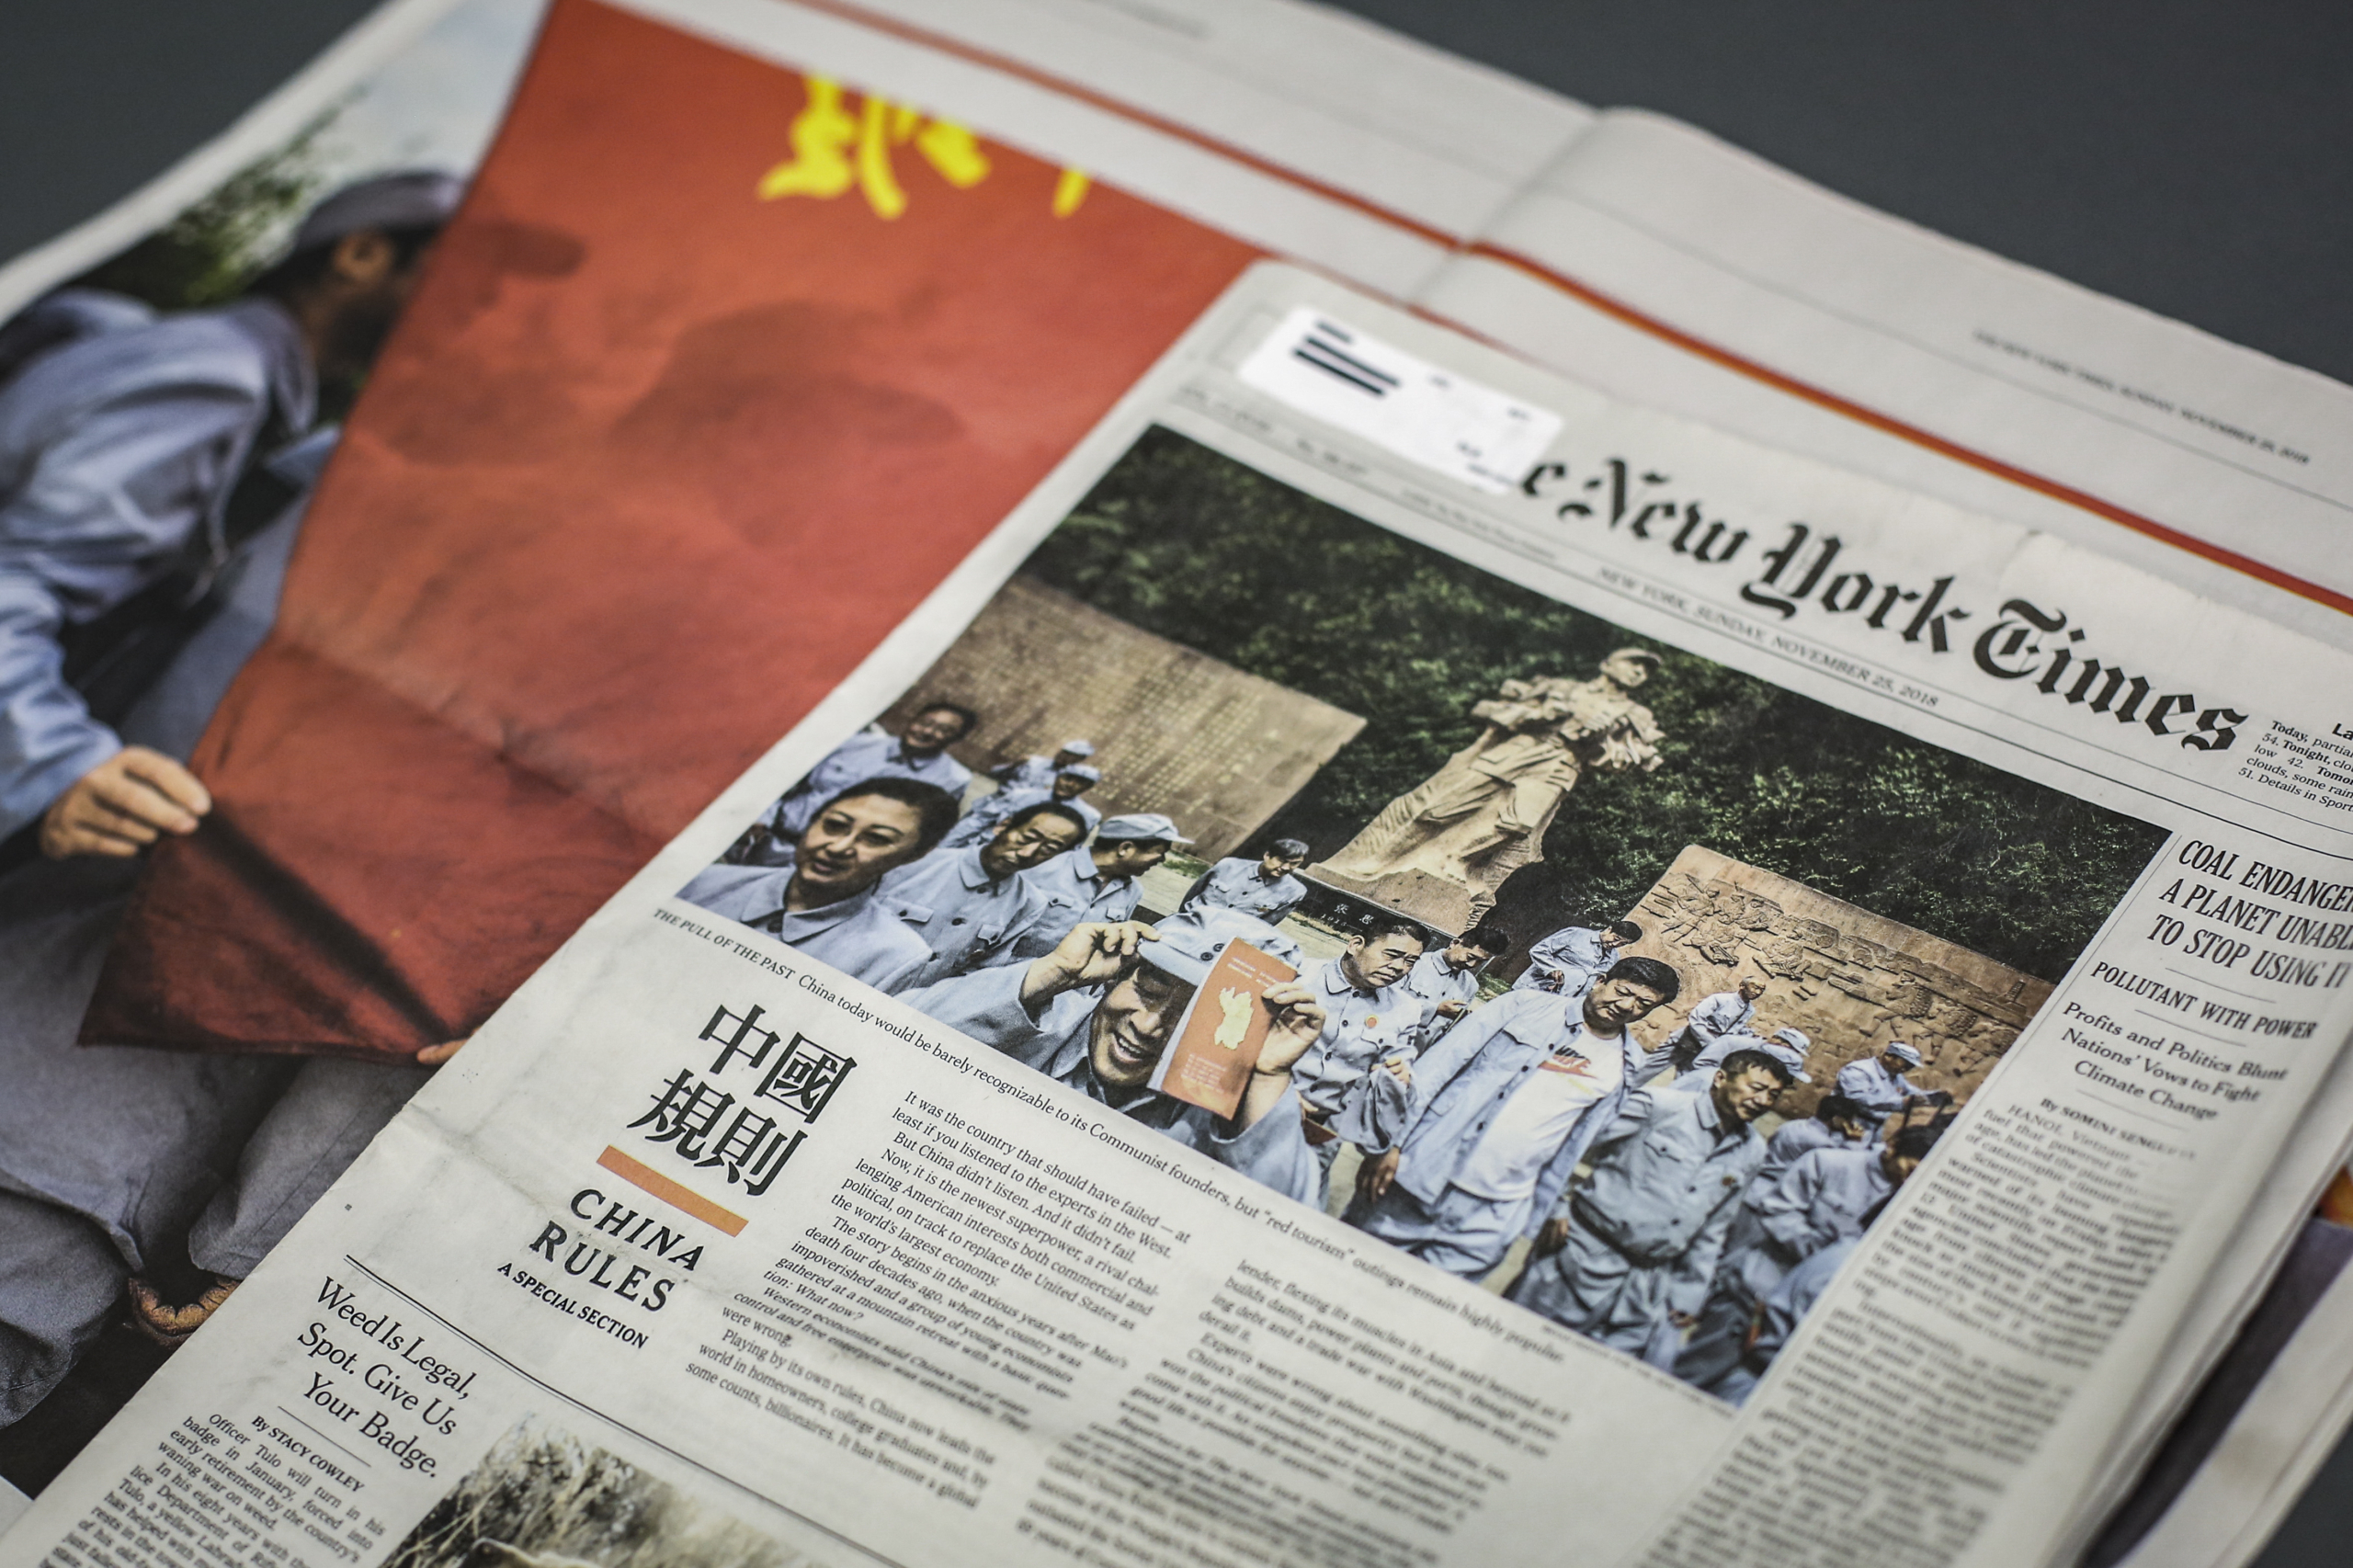 Trong ấn bản ngày 25/11/2018 của mình, The New York Times đã xuất bản một chuyên mục có tên “China Rules” (tạm dịch “Trung Quốc Là Bên Đặt Ra Quy Tắc”). Phần chuyên mục này trưng lên một dòng Hán tự rất lớn trên một nền màu đỏ, kèm theo một bài viết dành những lời ca ngợi nhiệt thành dành cho ĐCSTQ, trong khi hạ thấp Hoa Kỳ. (Ảnh: Samira Bouaou/The Epoch Times)